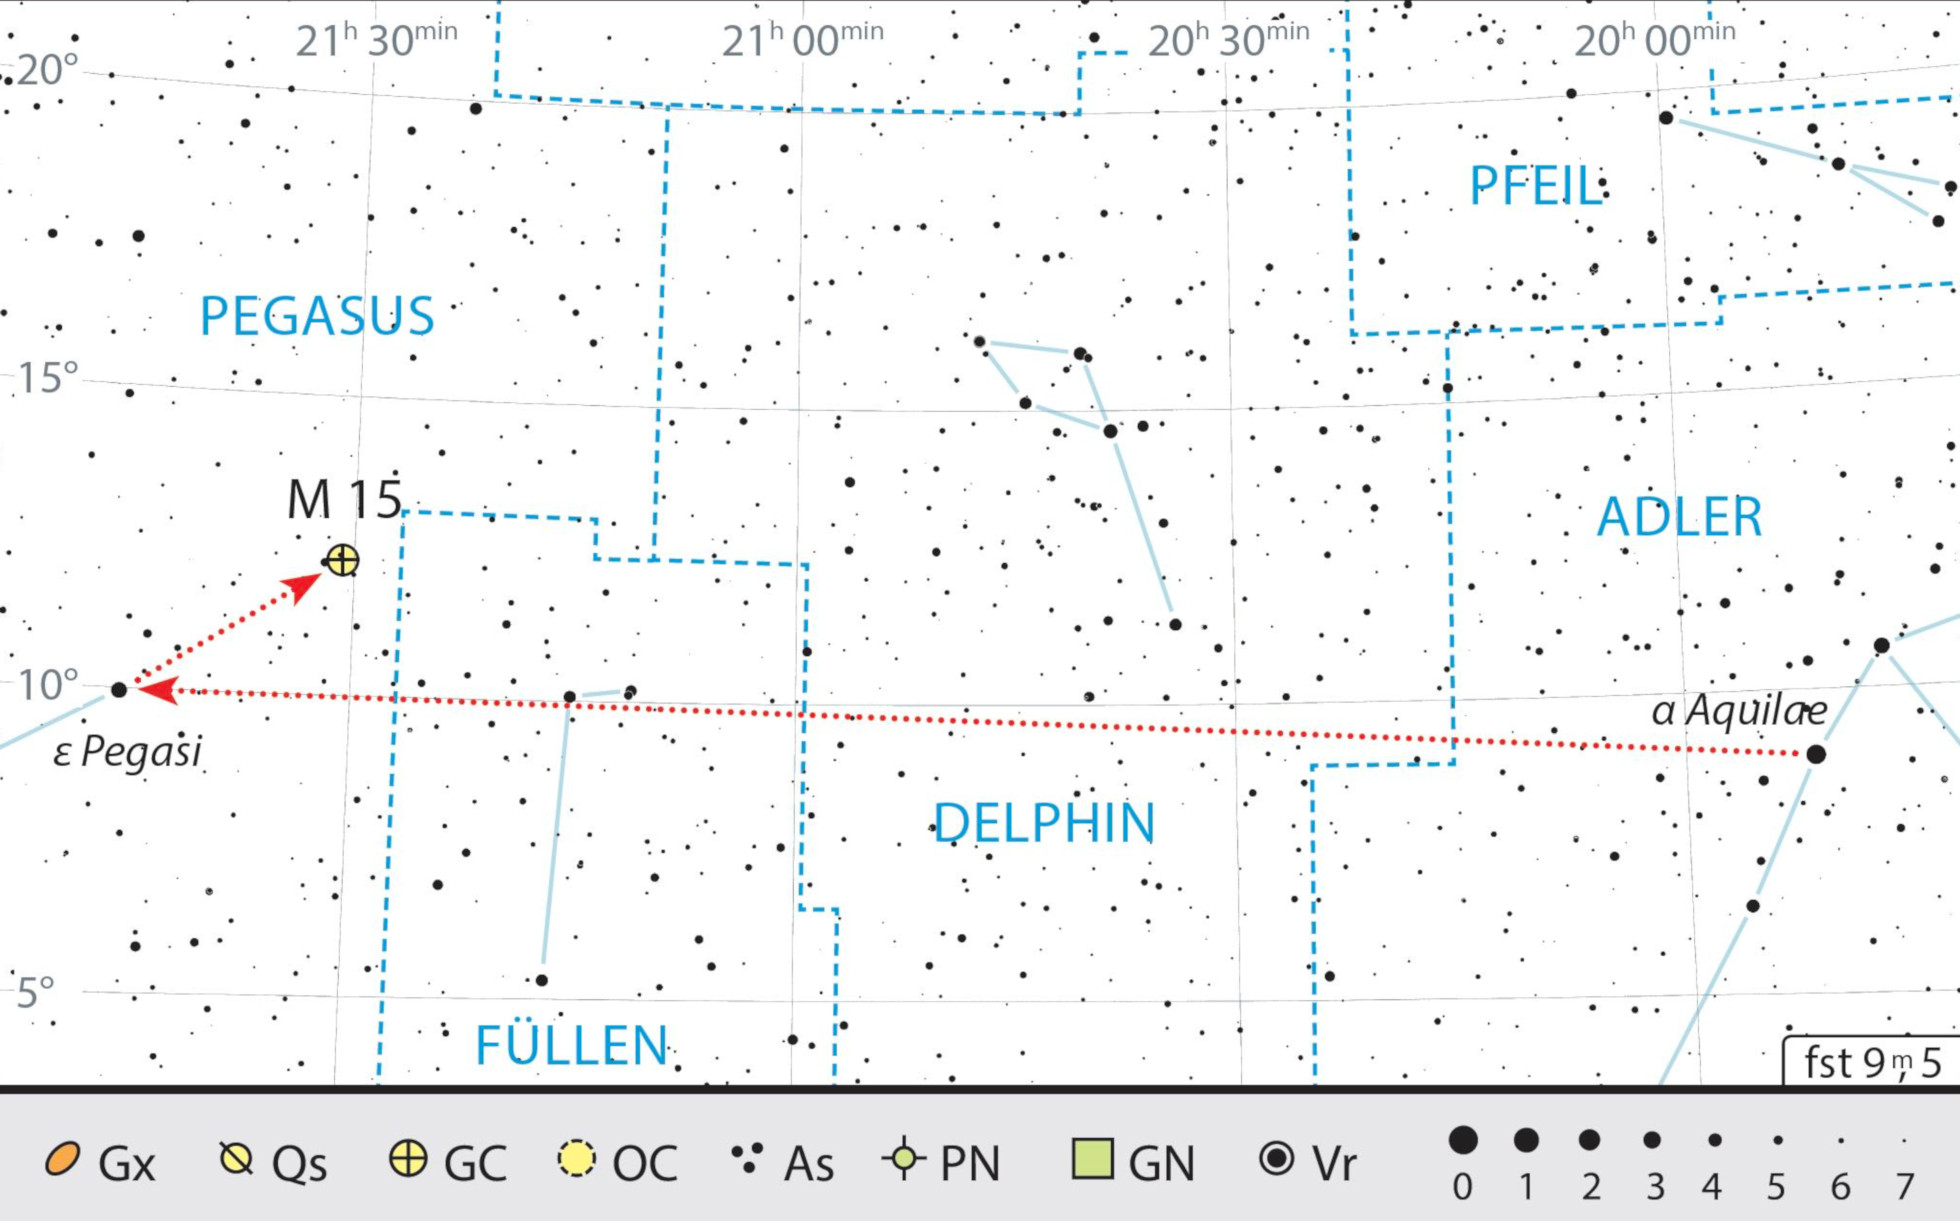 Mapa starhoppingu do M15. J. Scholten